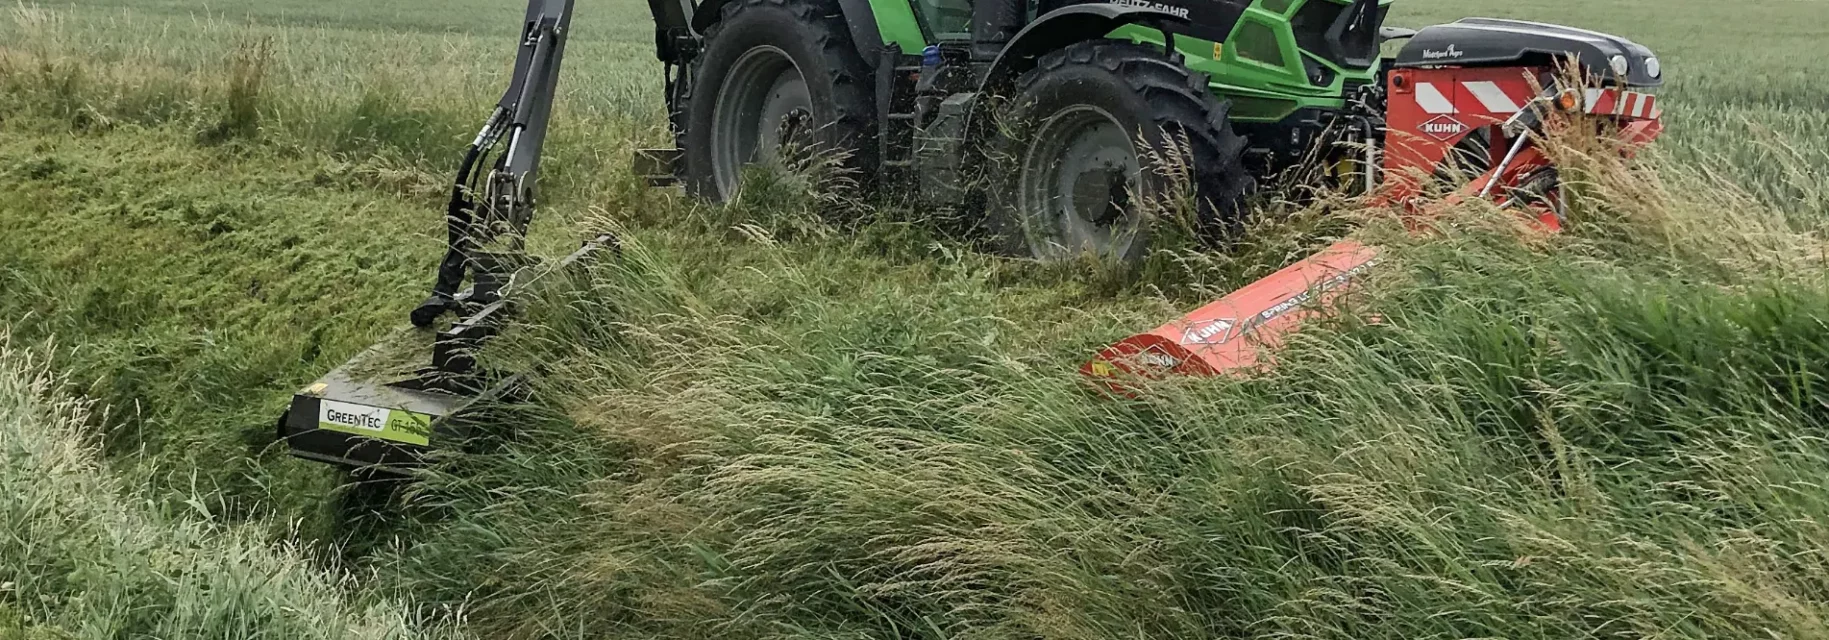 Hydraulisk græsklipper monteret på traktor